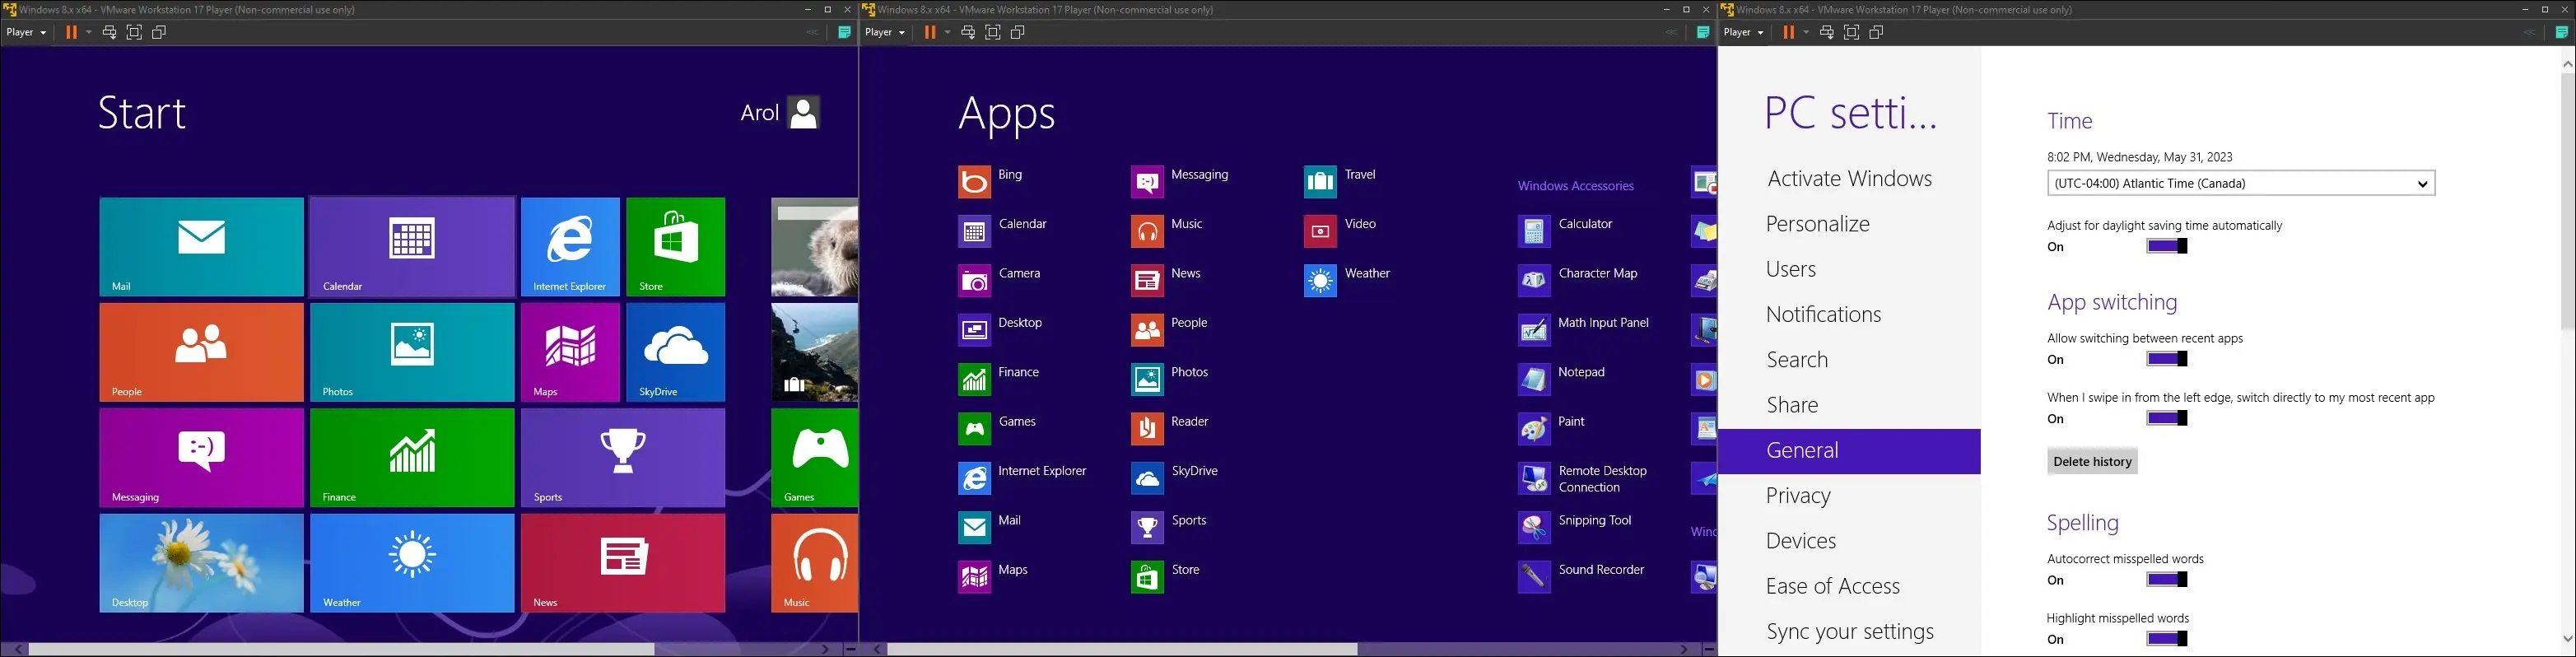 スタート メニュー、すべてのアプリ メニュー、設定アプリを示す、仮想マシン上の Windows 8 の画像